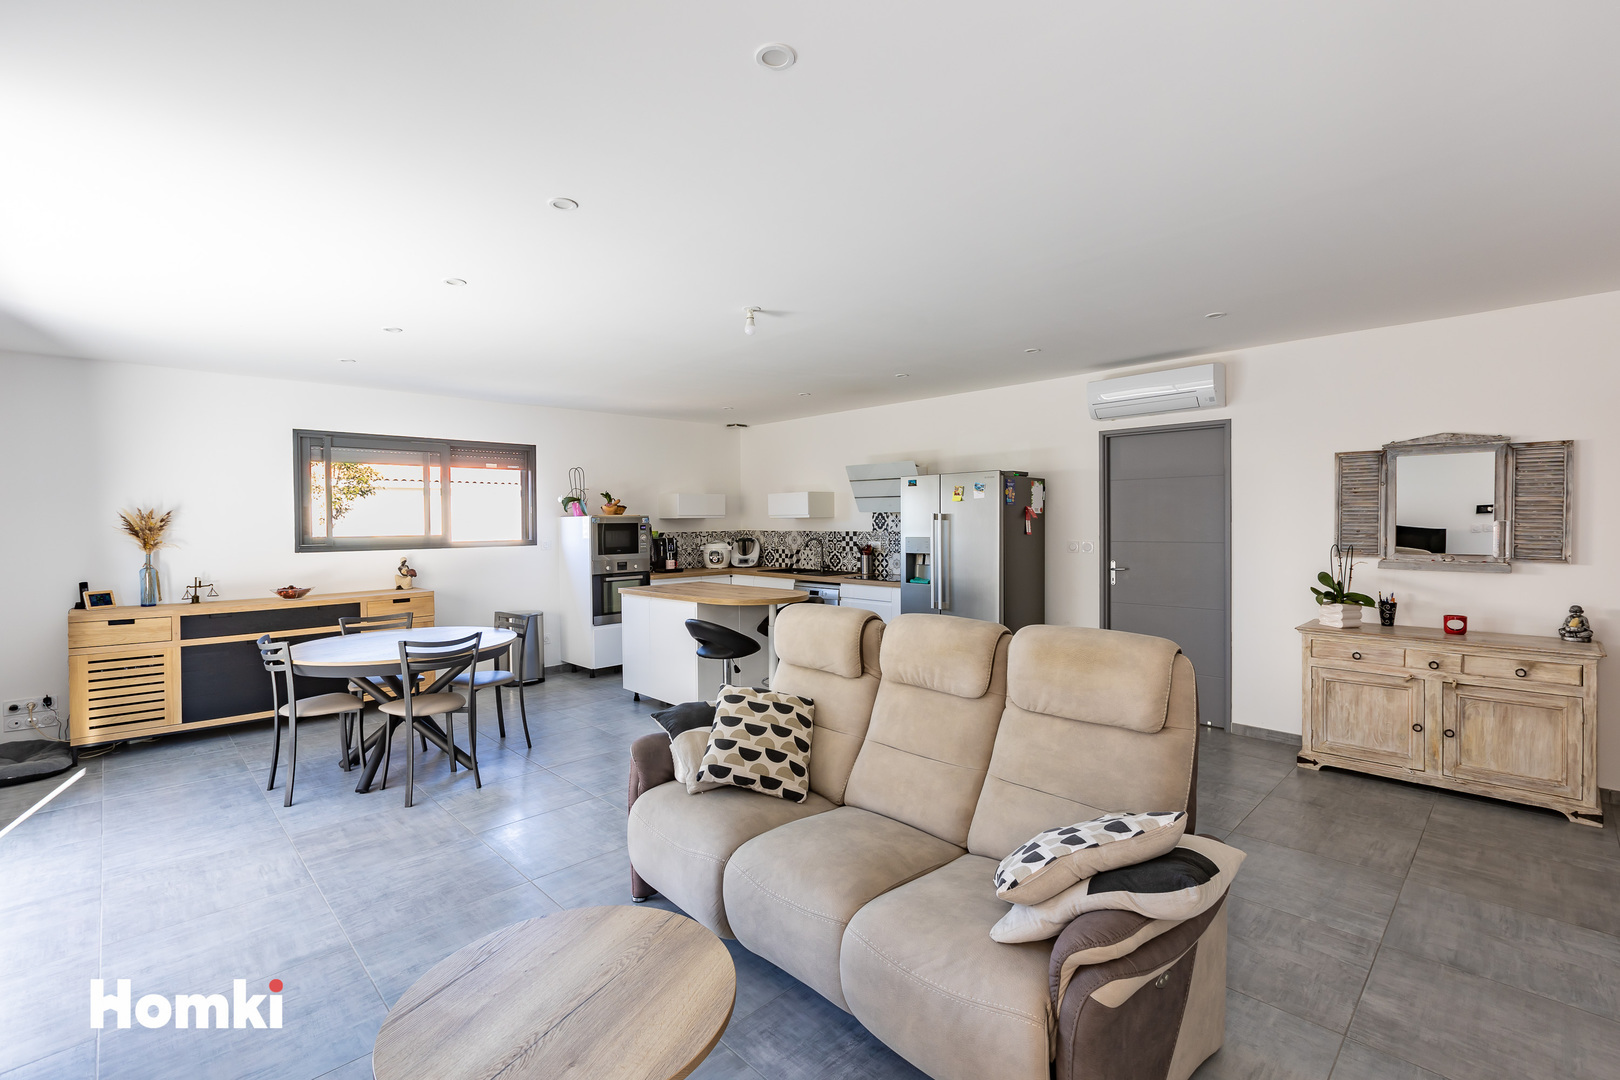 Homki - Vente Maison/villa  de 95.0 m² à Nissan-lez-Enserune 34440